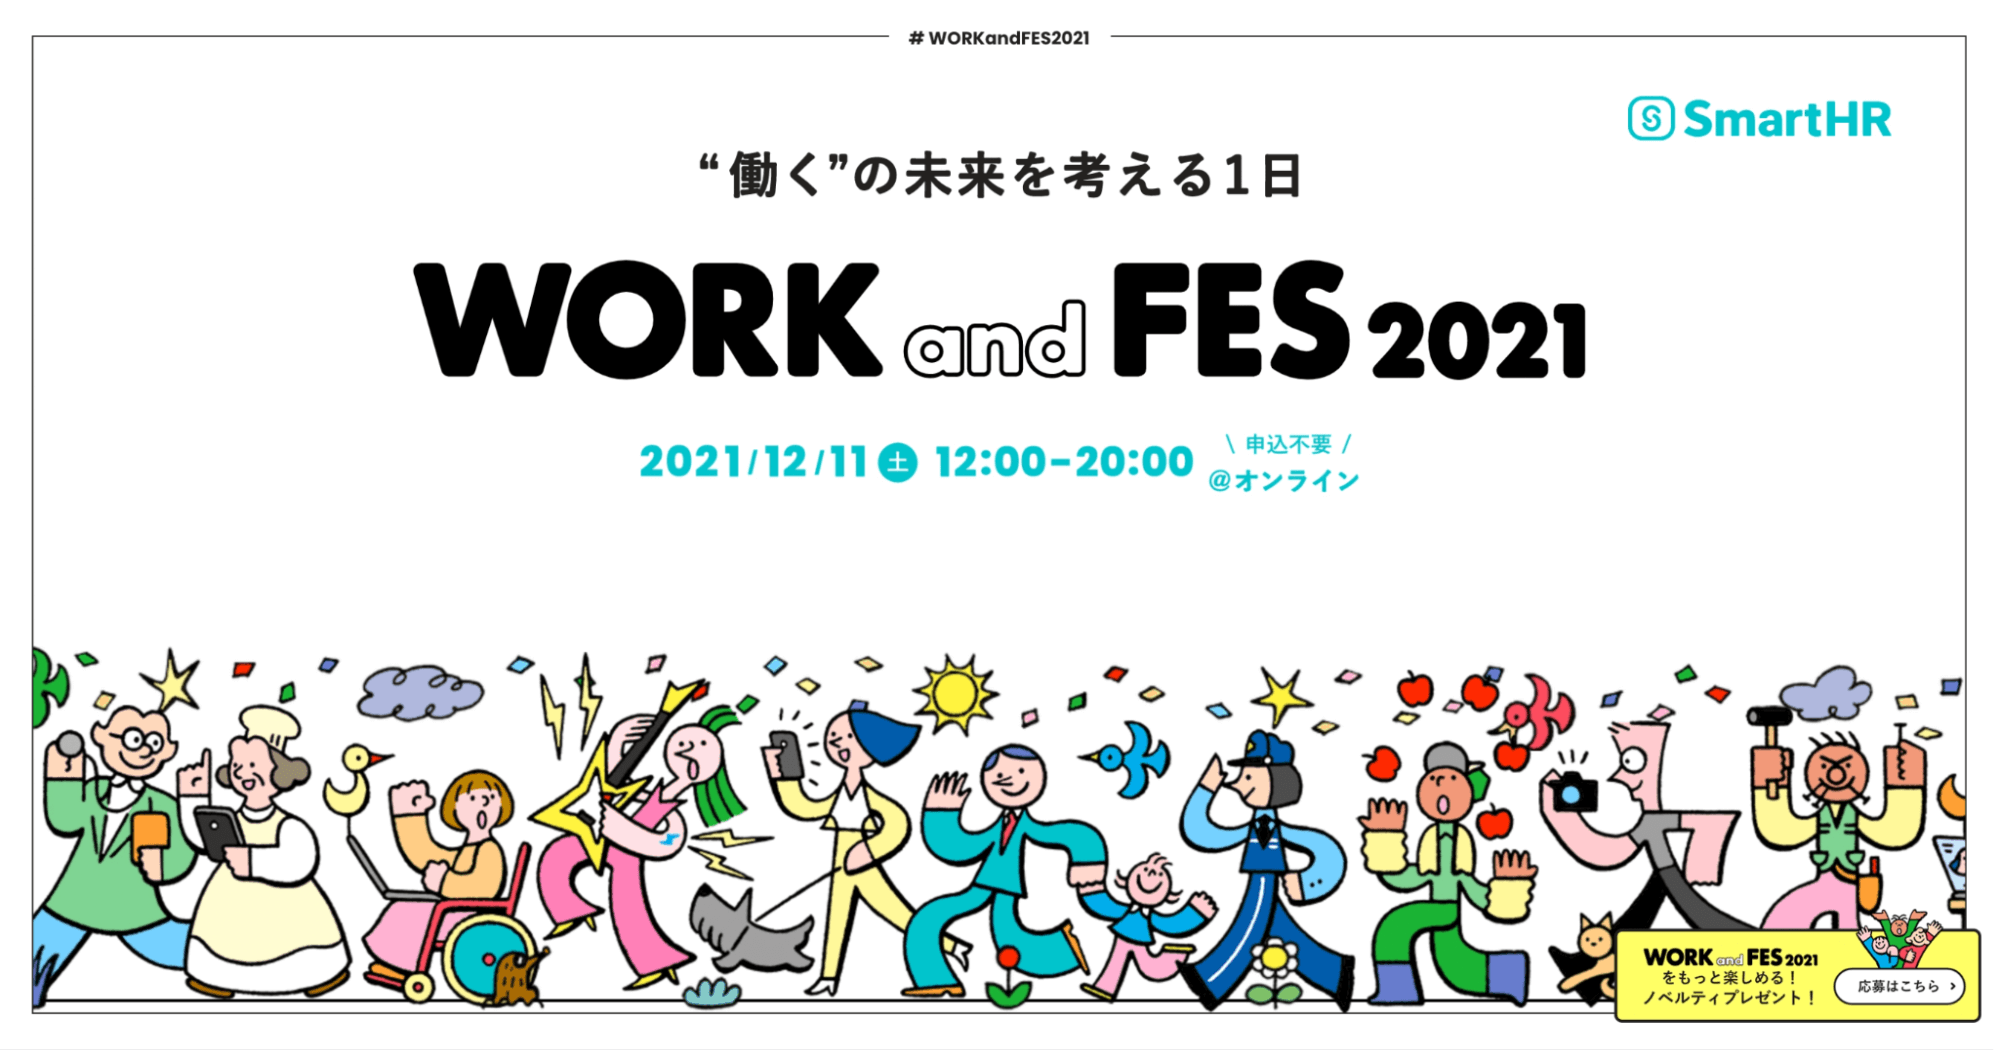 “働く”の未来を考えるオンラインフェス「WORK and FES 」画像。様々な職業の人物イラストが下部に描かれている。